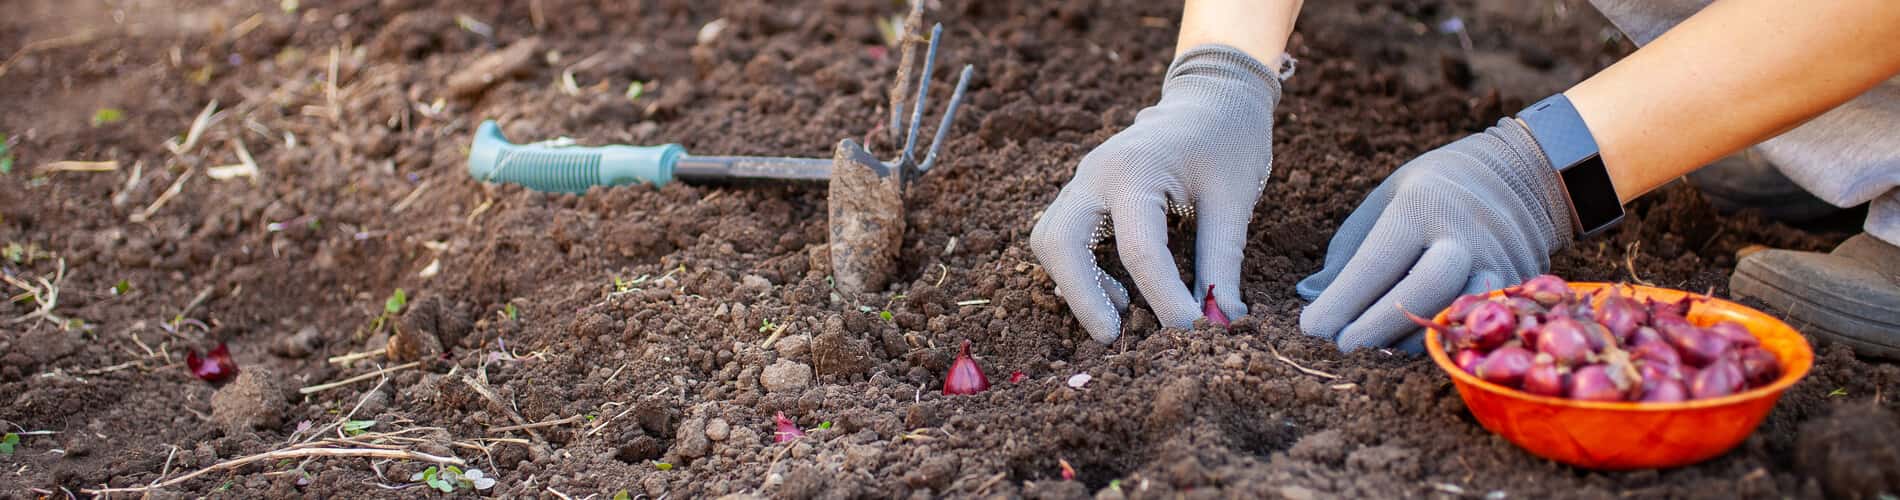 Pflanzgut: Vorteile und Vorgehen bei der Pflanzung von Kartoffeln, Steckzwiebeln, Knoblauch, Blumenzwiebeln und Spargeln